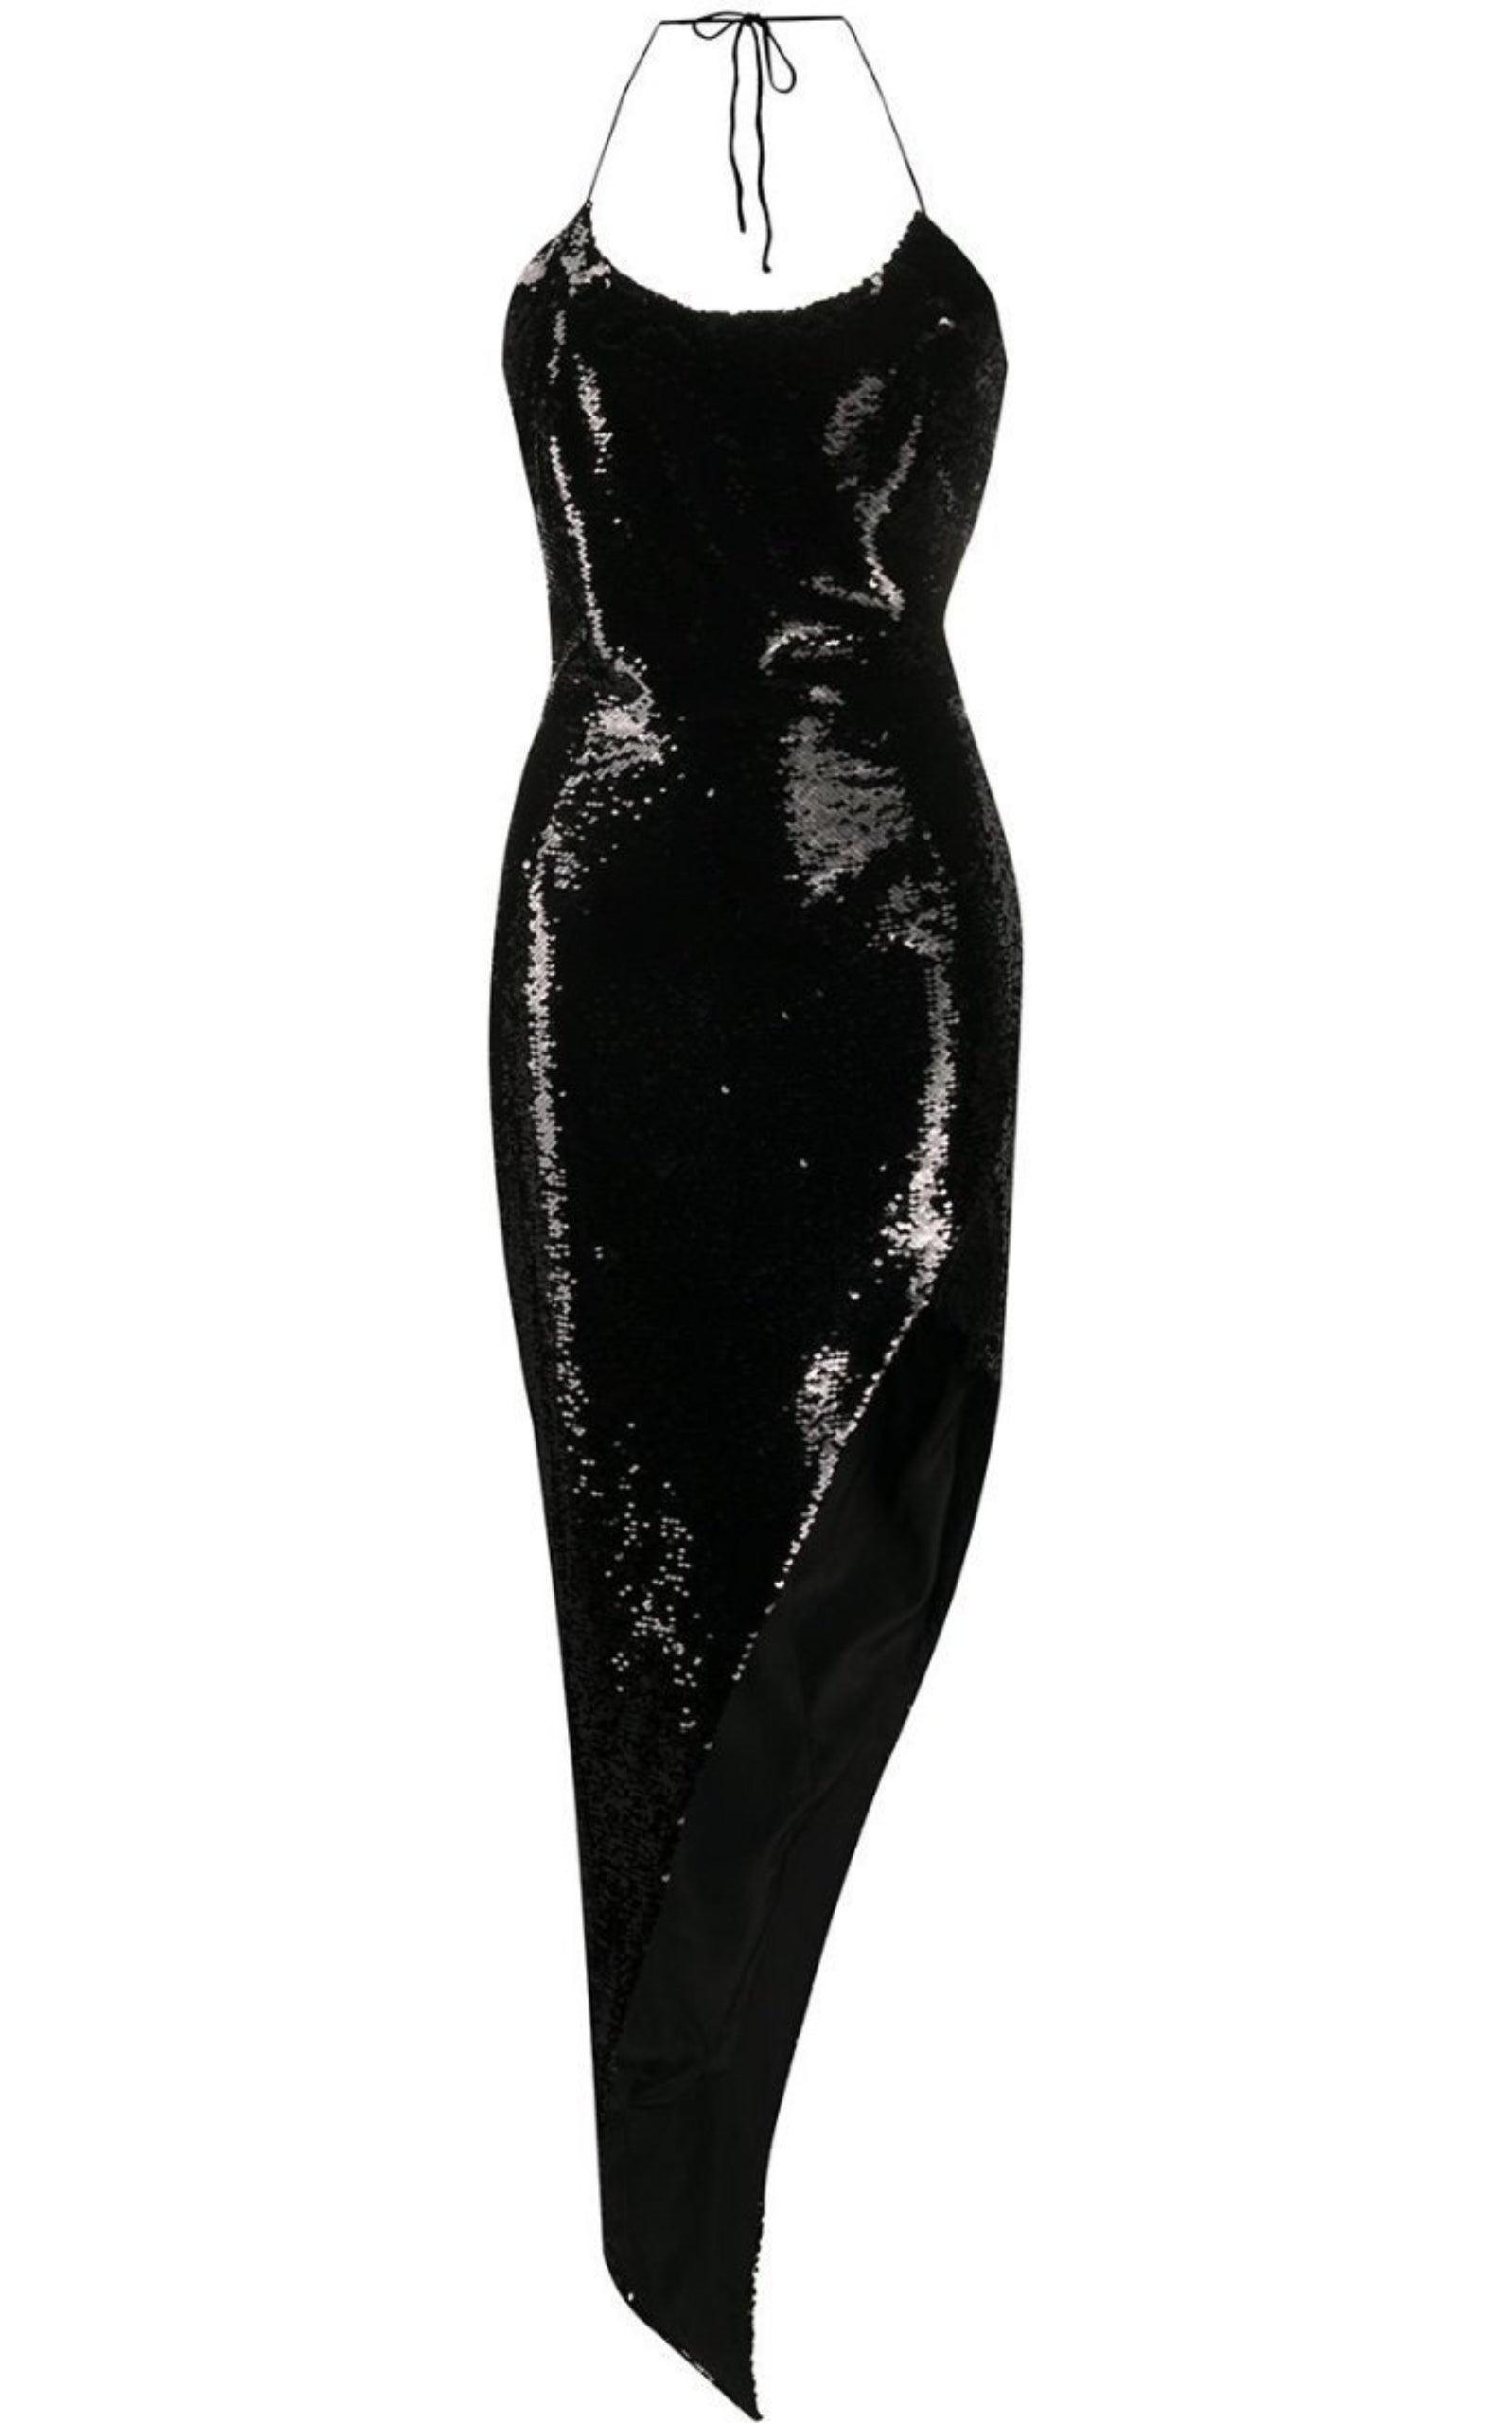 Thin Straps Asymmetric Dress - Black